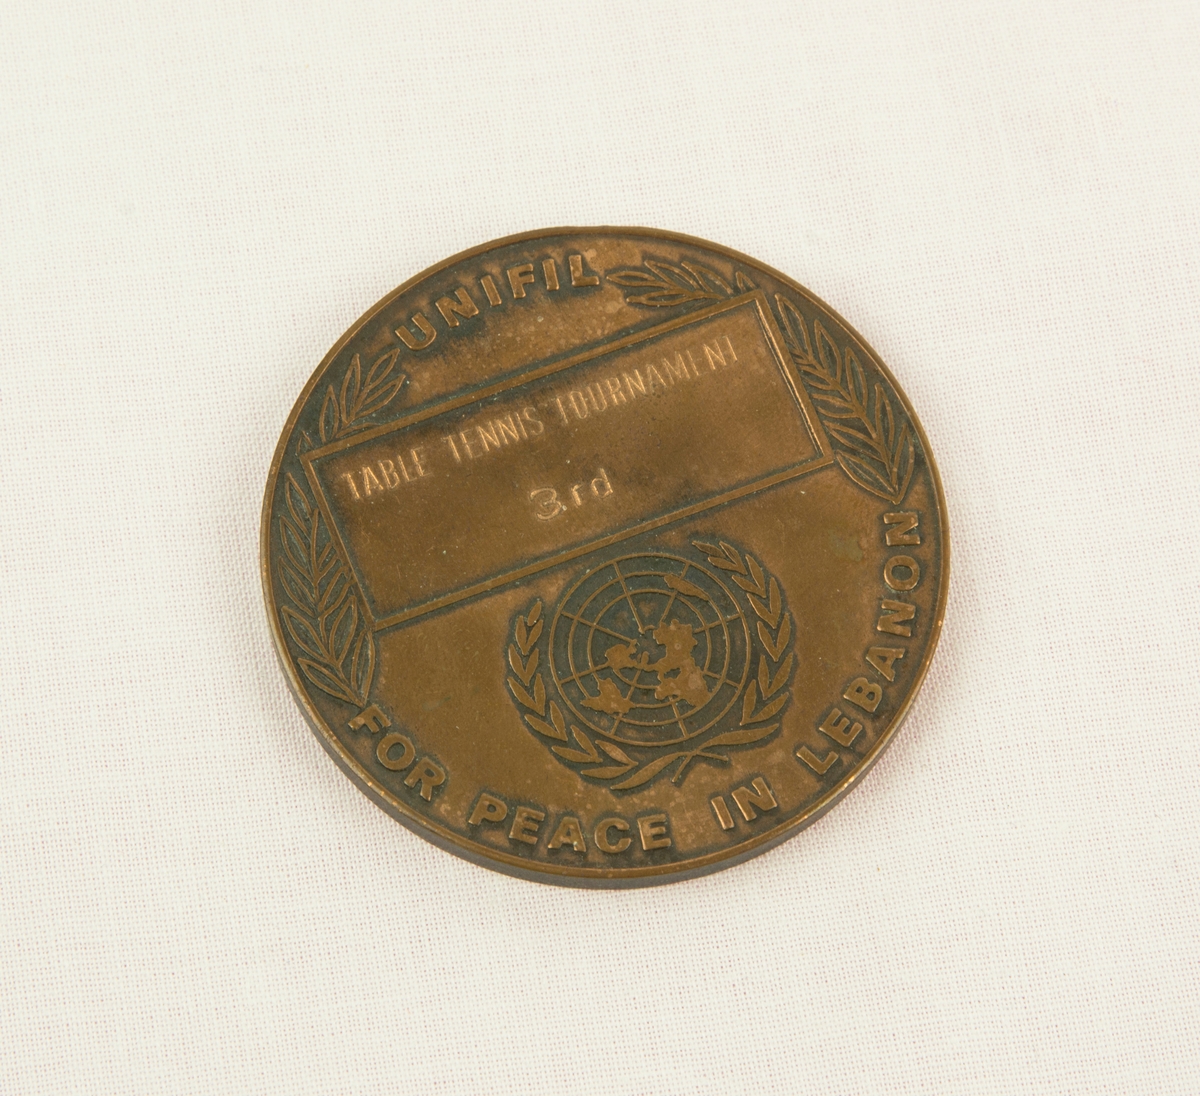 Medalj i metall från mästerskapen i bordtennis från FN-insatsen i Libanon. Medaljen är för tredje plast och är gjord i brons. På ena sidan av medaljen finns en FN logga omgiven av en lagerkrans, under står "UNIFIL FOR PEACE IN LEBANON". På andra sidan finns en karta över Libanons västra del samt delar av Israel och Syrien. Medaljen förvaras i ett lackat träfodral som även fungerar som stöd. Fodralet har en filtklädd insida.